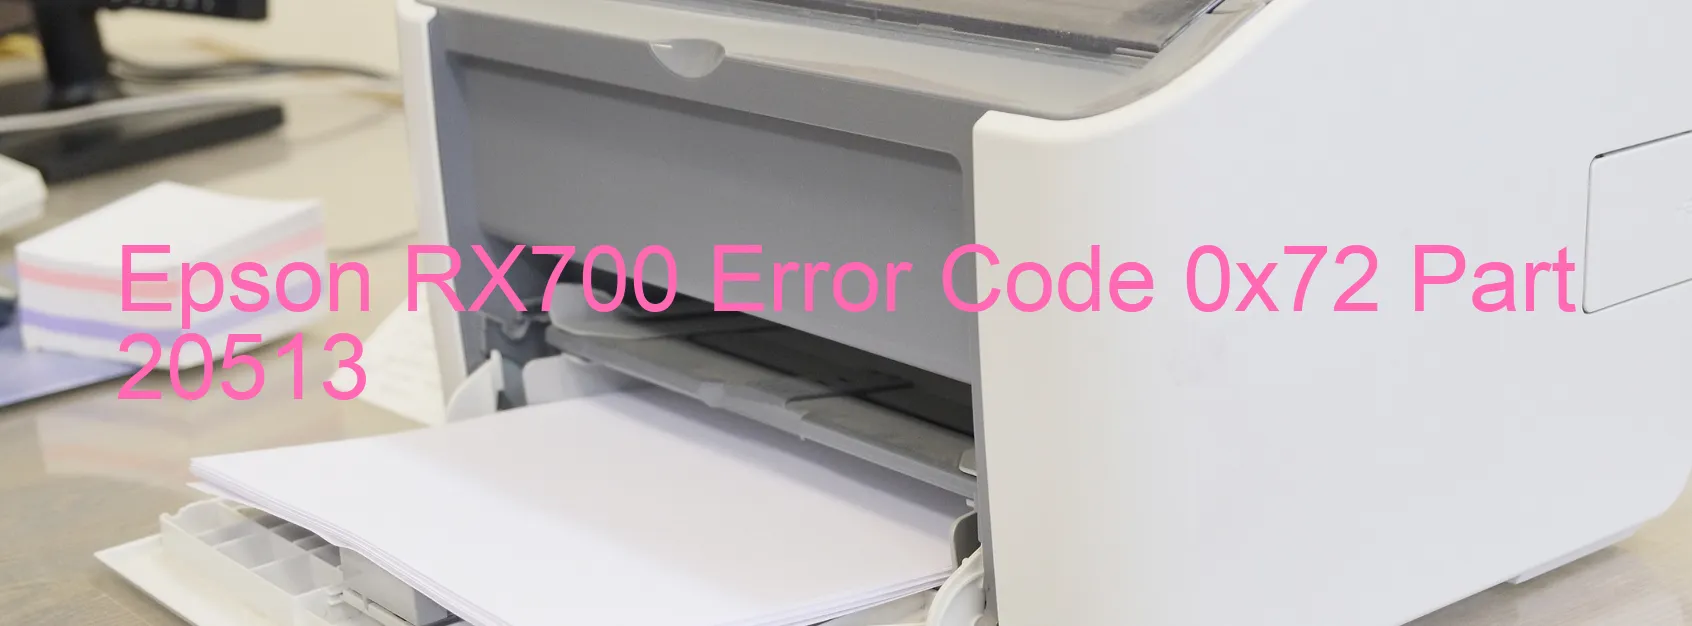 Epson RX700 Error Code 0x72 Part 20513